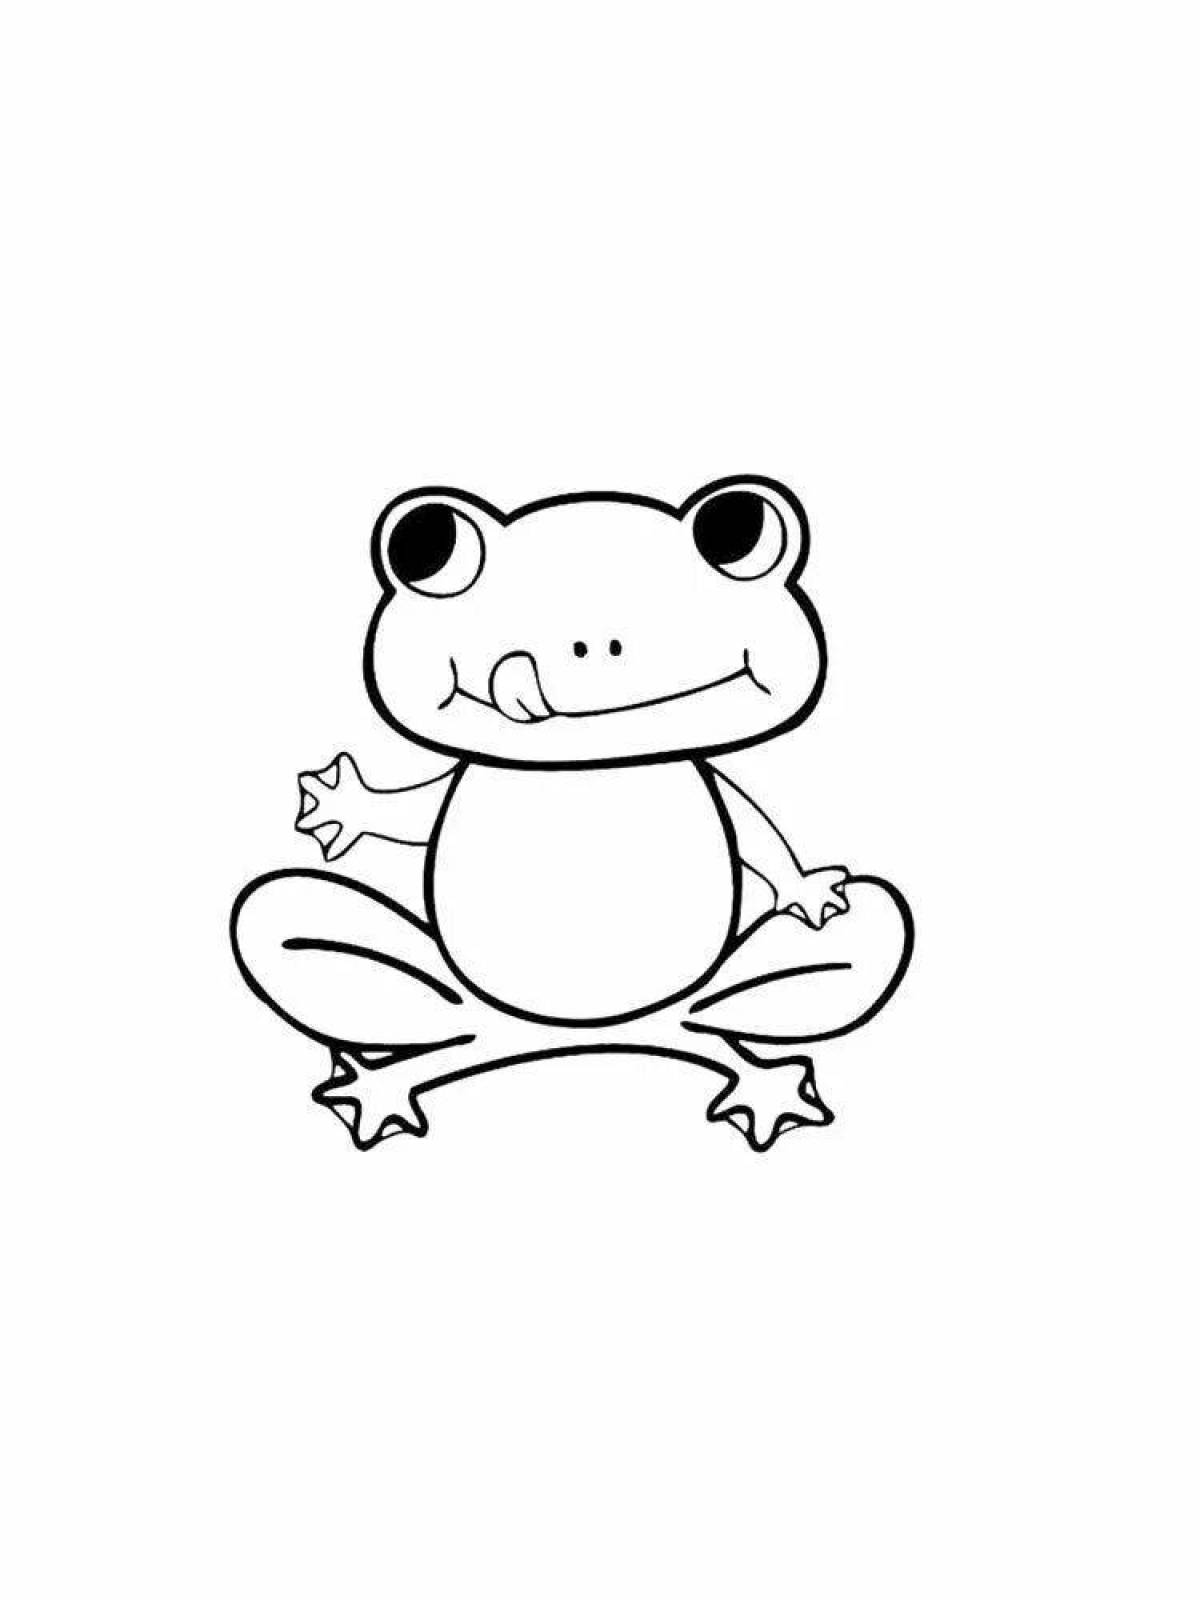 Amazing tik tok frog coloring page